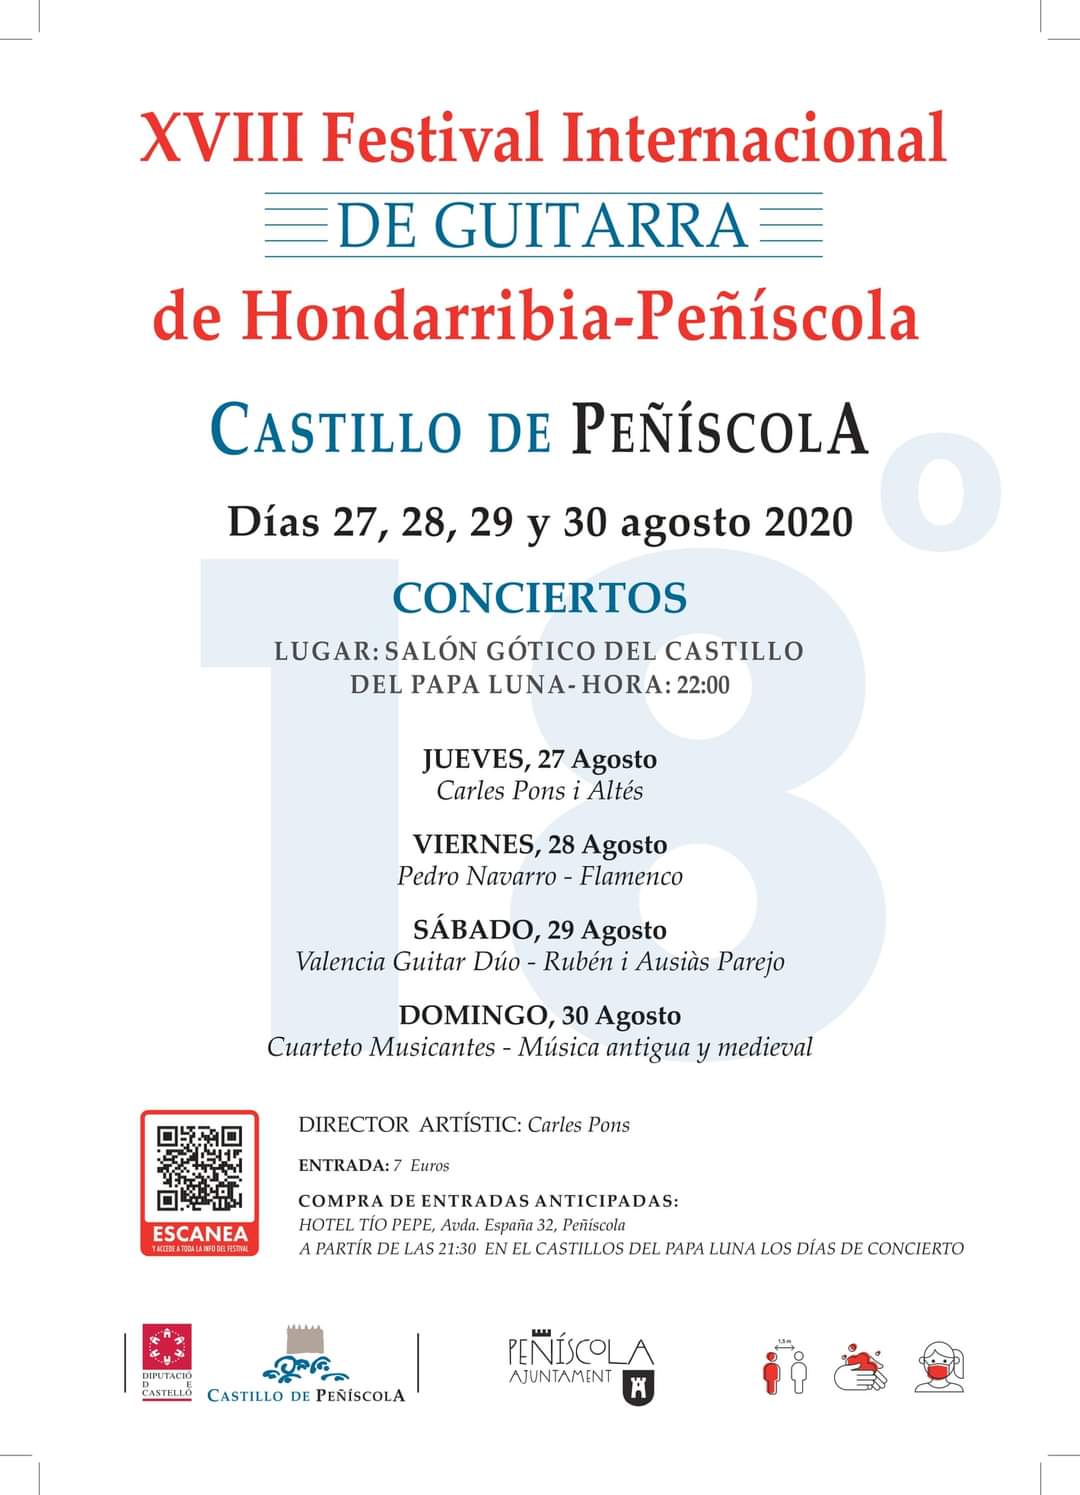 Arranca aquesta nit el XVIII Festival Internacional de Guitarra d'Hondarribia-Peníscola